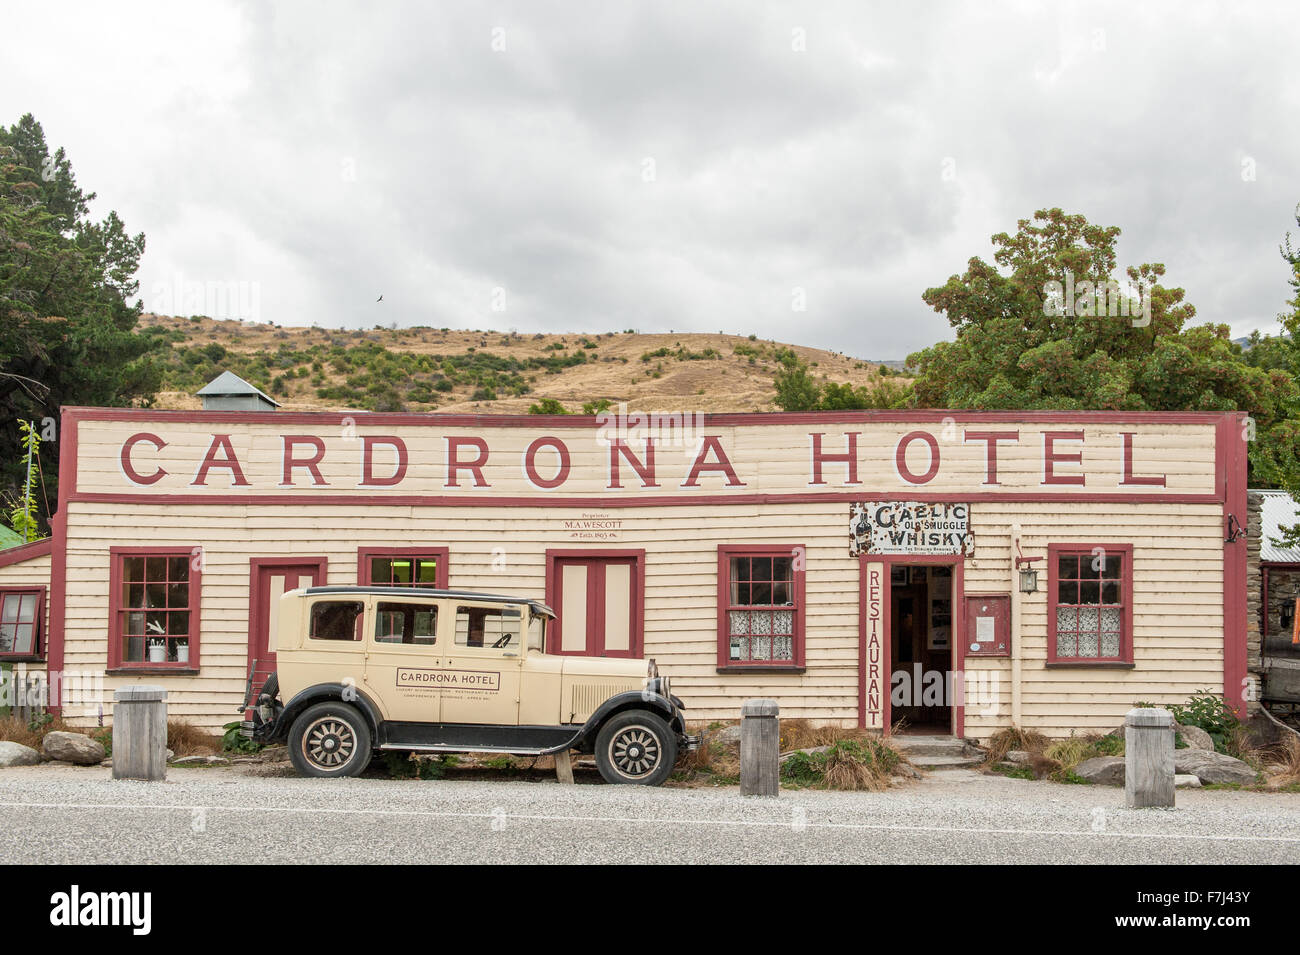 Hôtel Cardrona Vintage dans la ville pittoresque de Cardrona, Central Otago, île du Sud, Nouvelle-Zélande. Banque D'Images